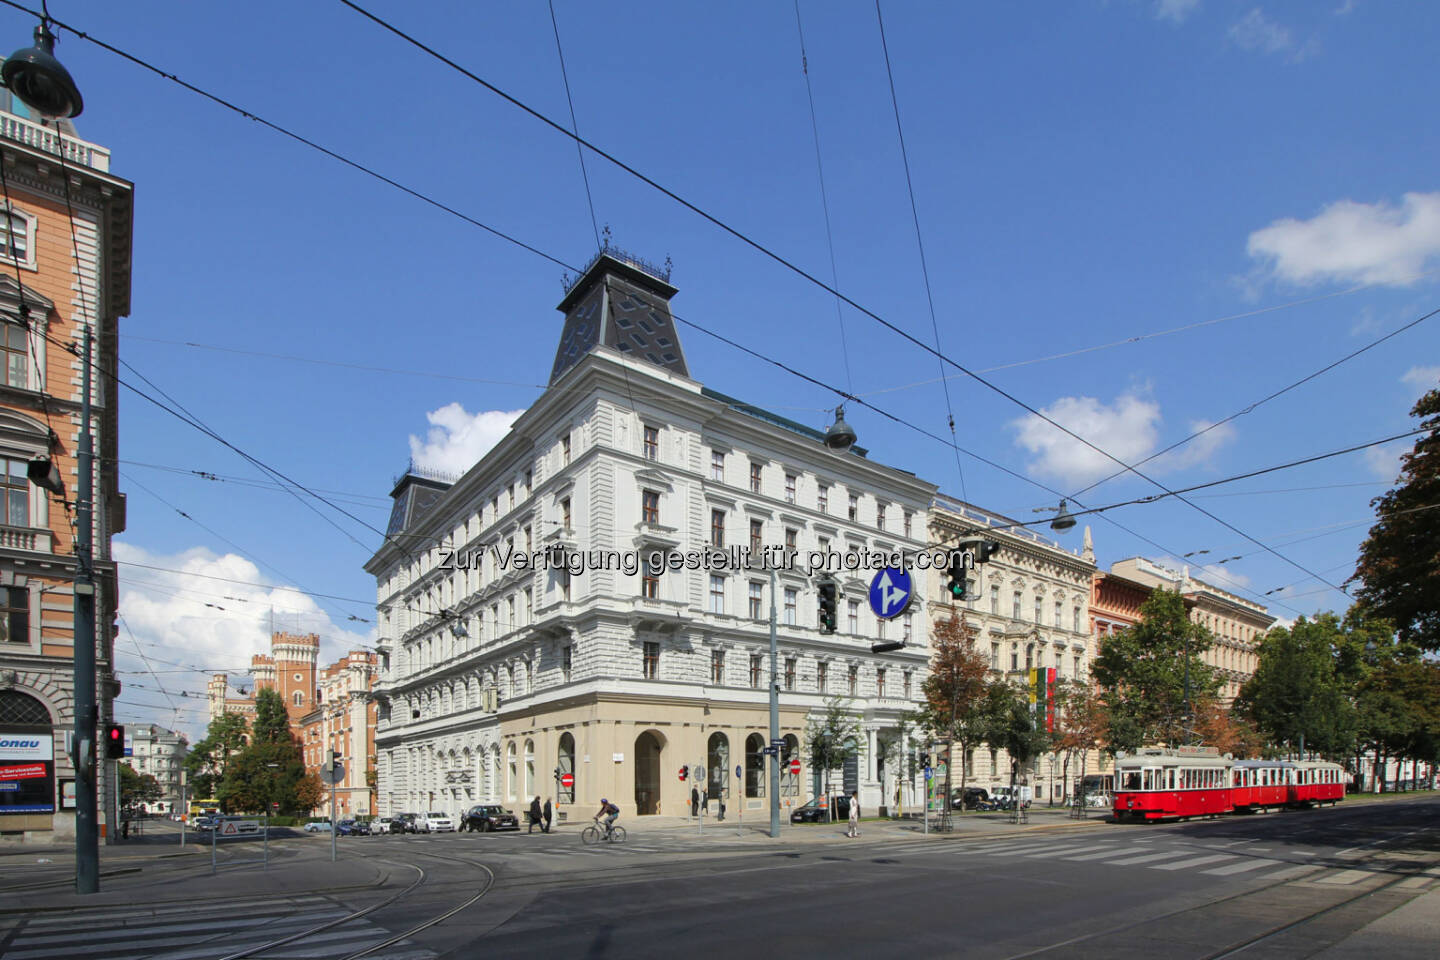 Die Bank Austria Real Invest Immobilien KAG für den offenen Immobilienfonds „Real Invest Austria“ ist neuer Eigentümer der ehemaligen k.u.k. Frucht- und Mehlbörse. Cbre hat vermittelt.